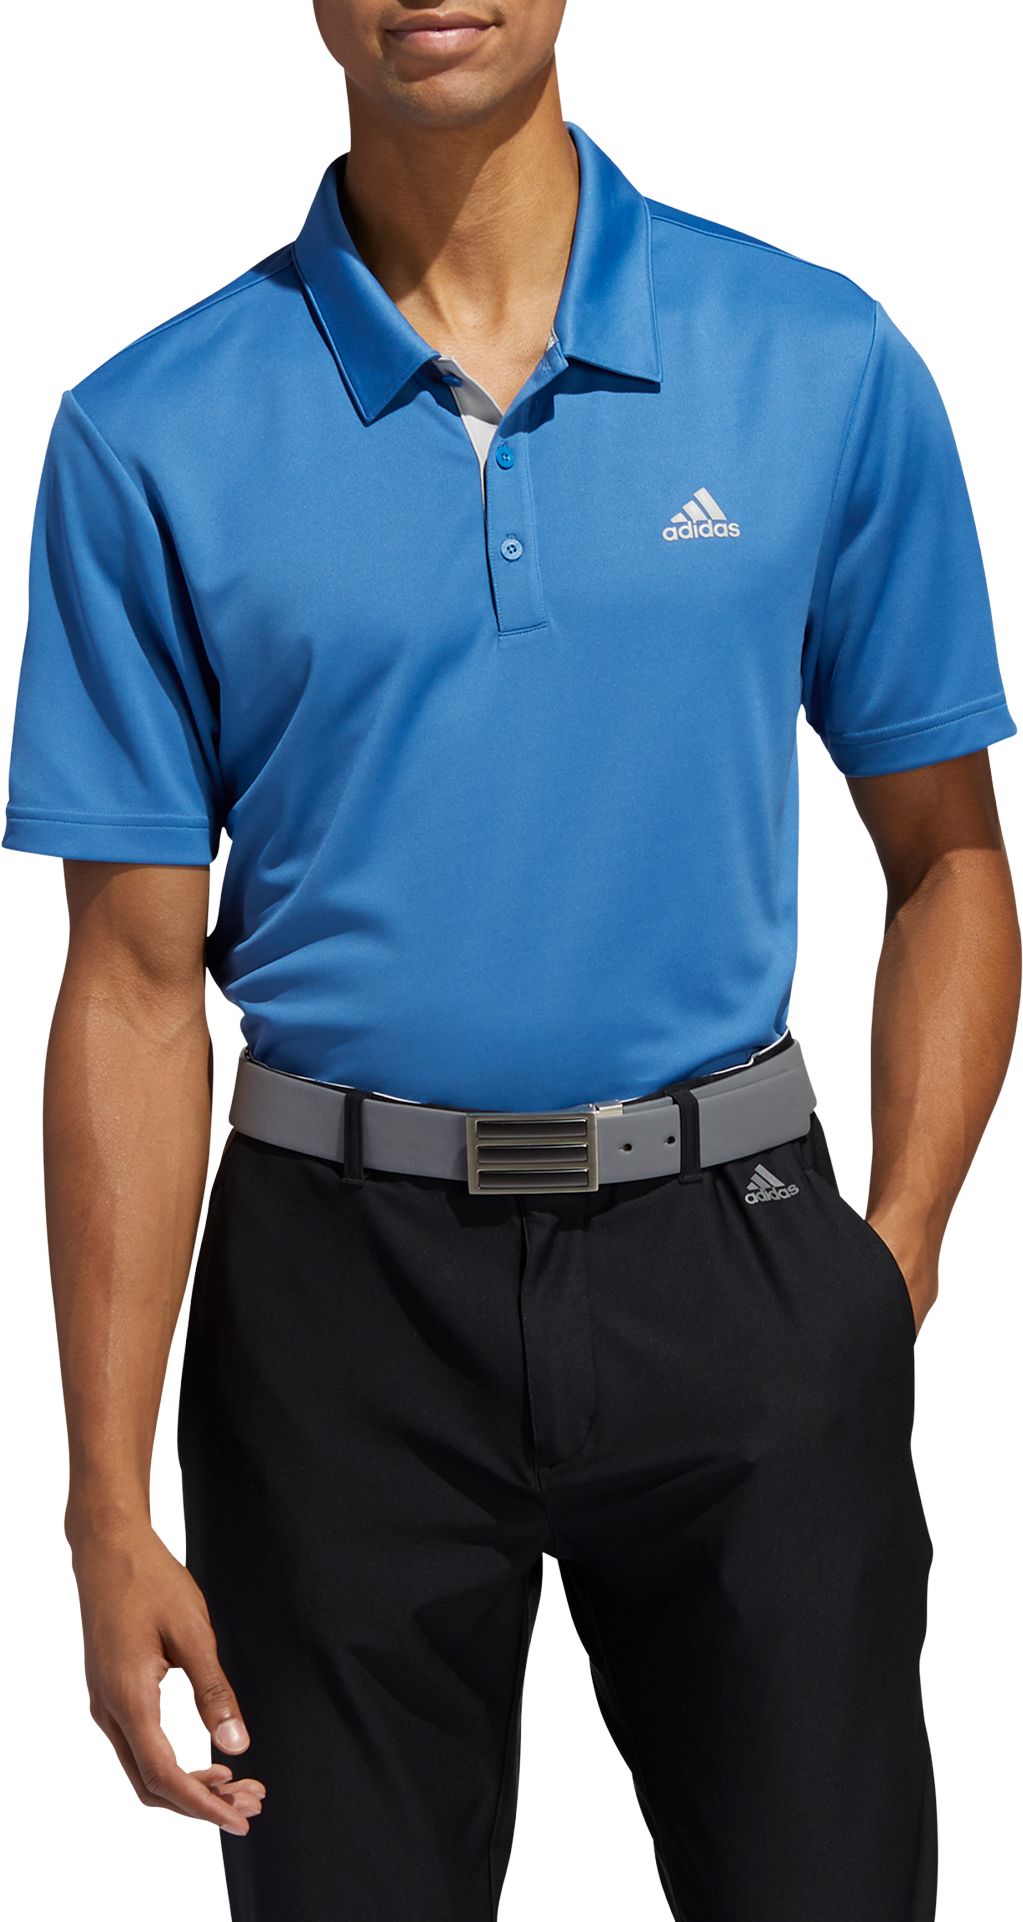 What is a Golf Shirt - Adidas Golf Polo